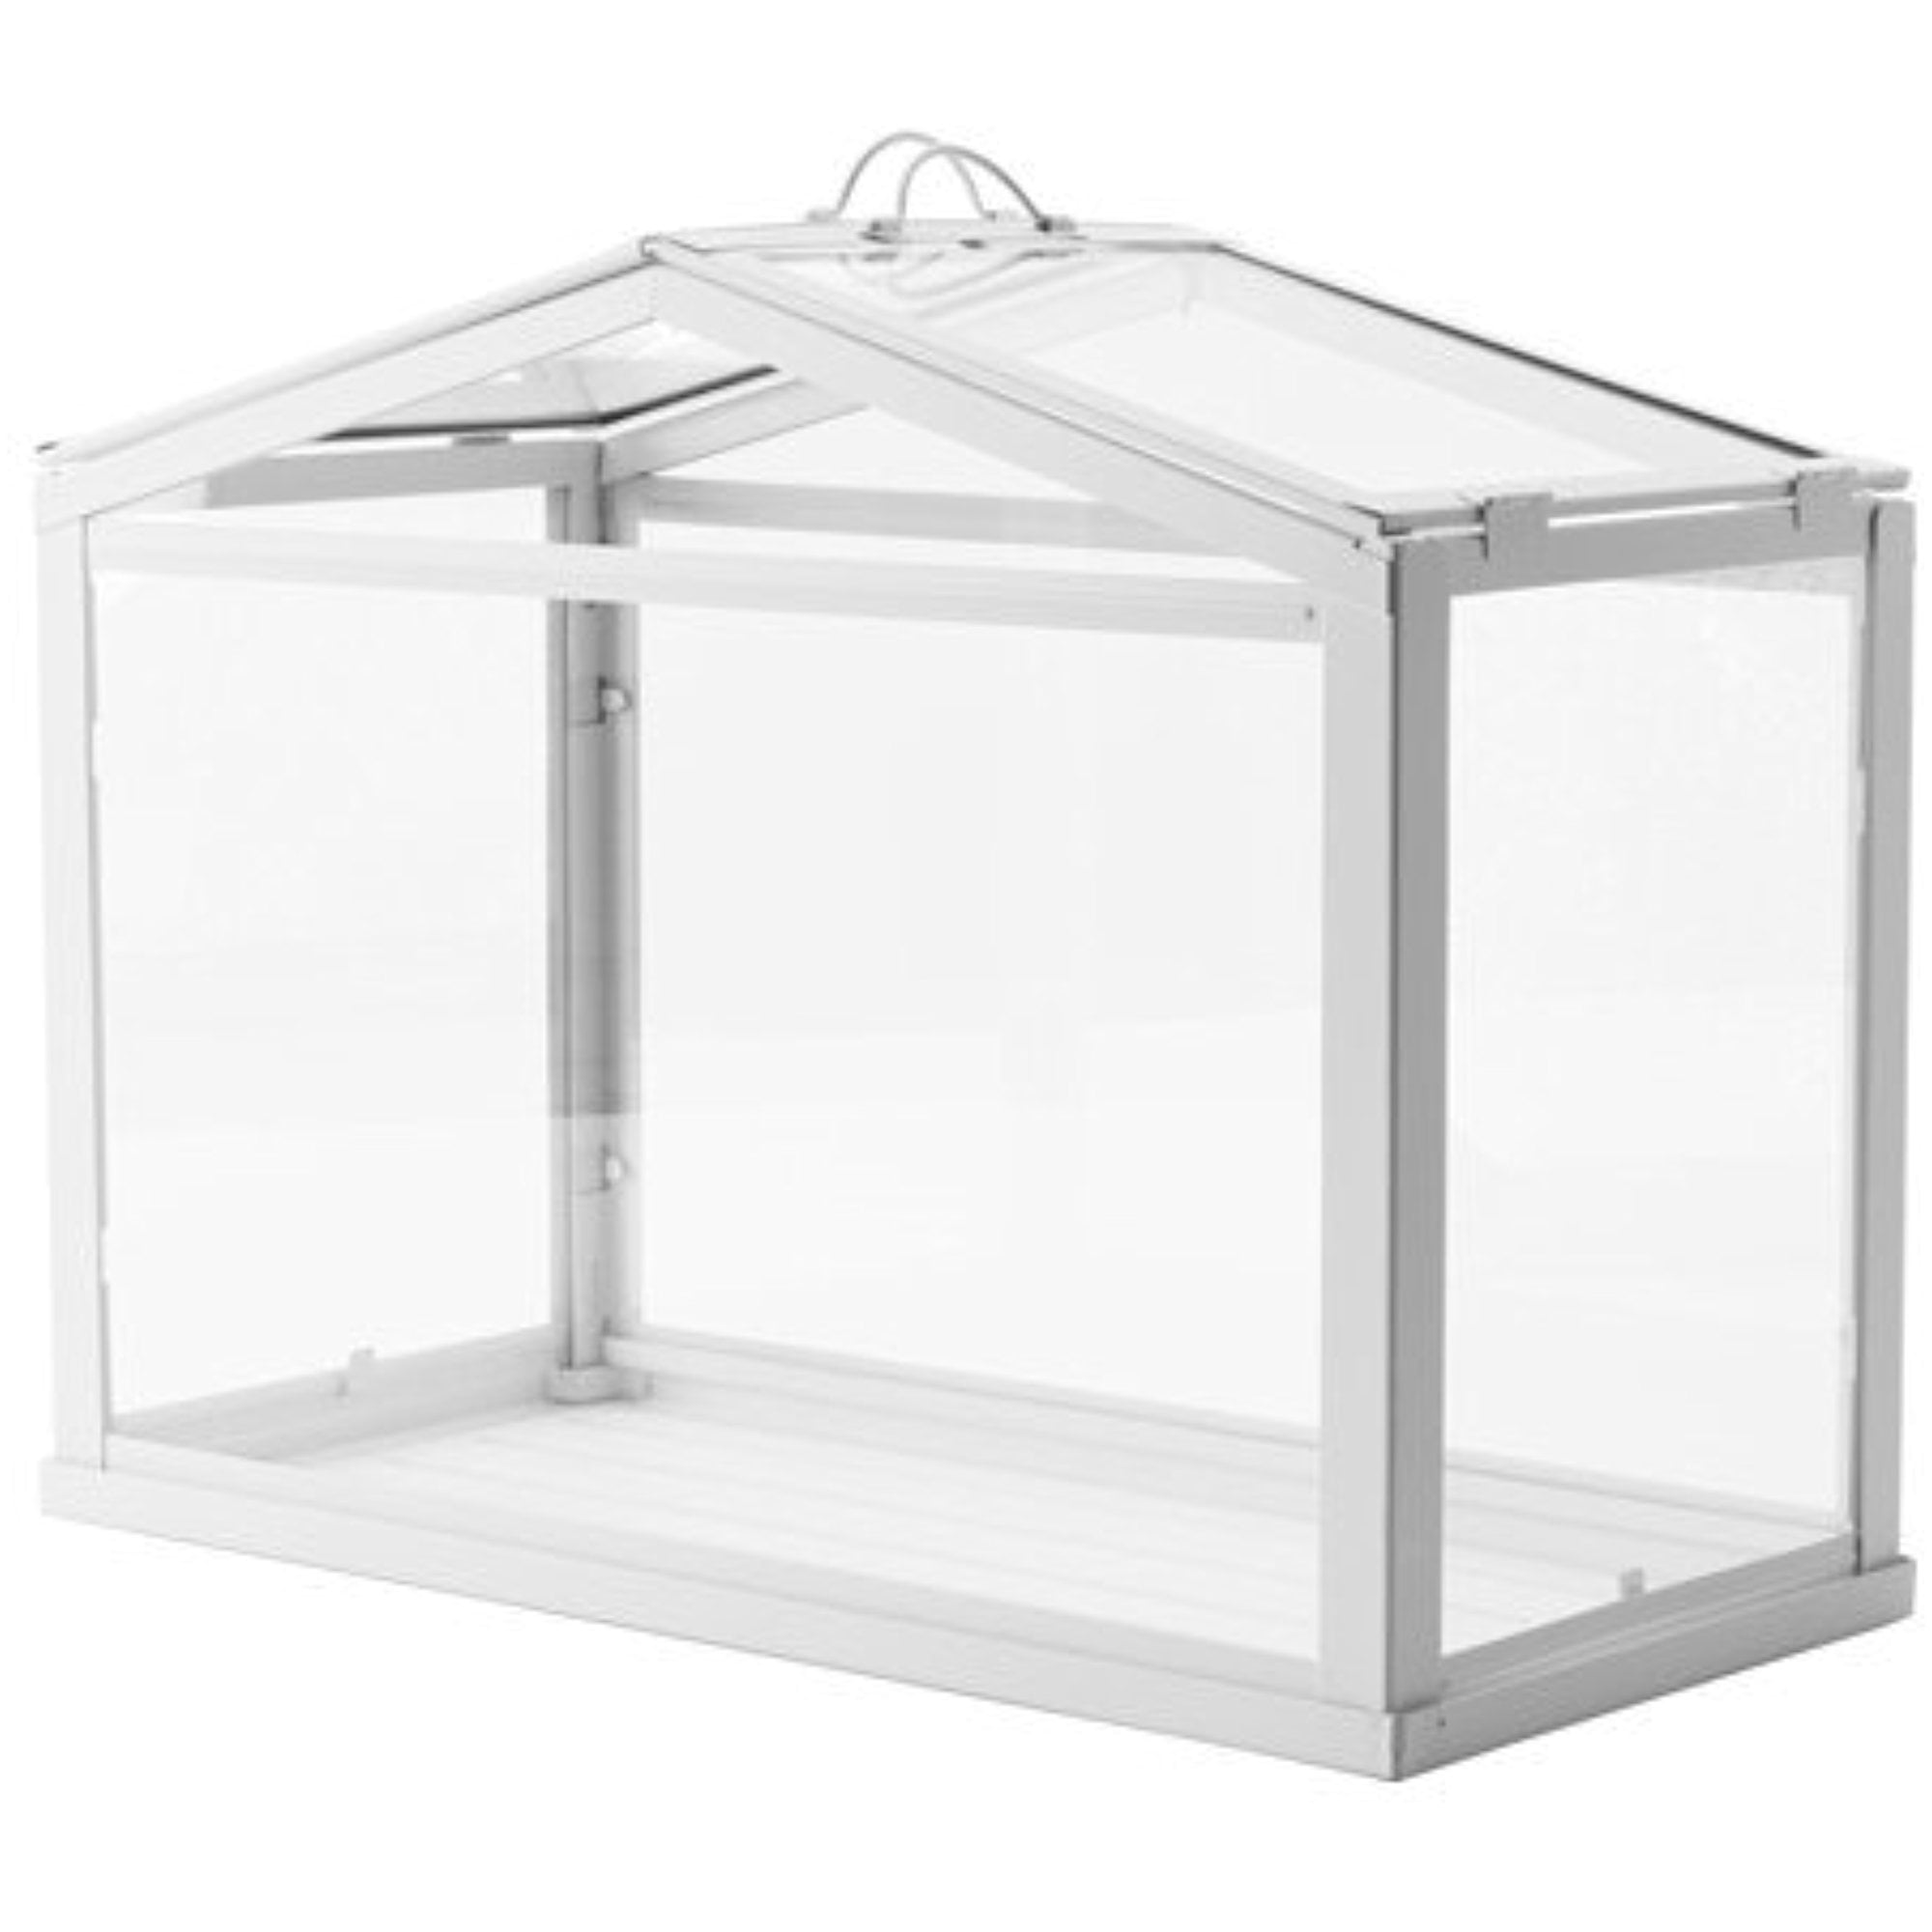 ÅKERBÄR Greenhouse, indoor/outdoor/white, 17 ¾ - IKEA